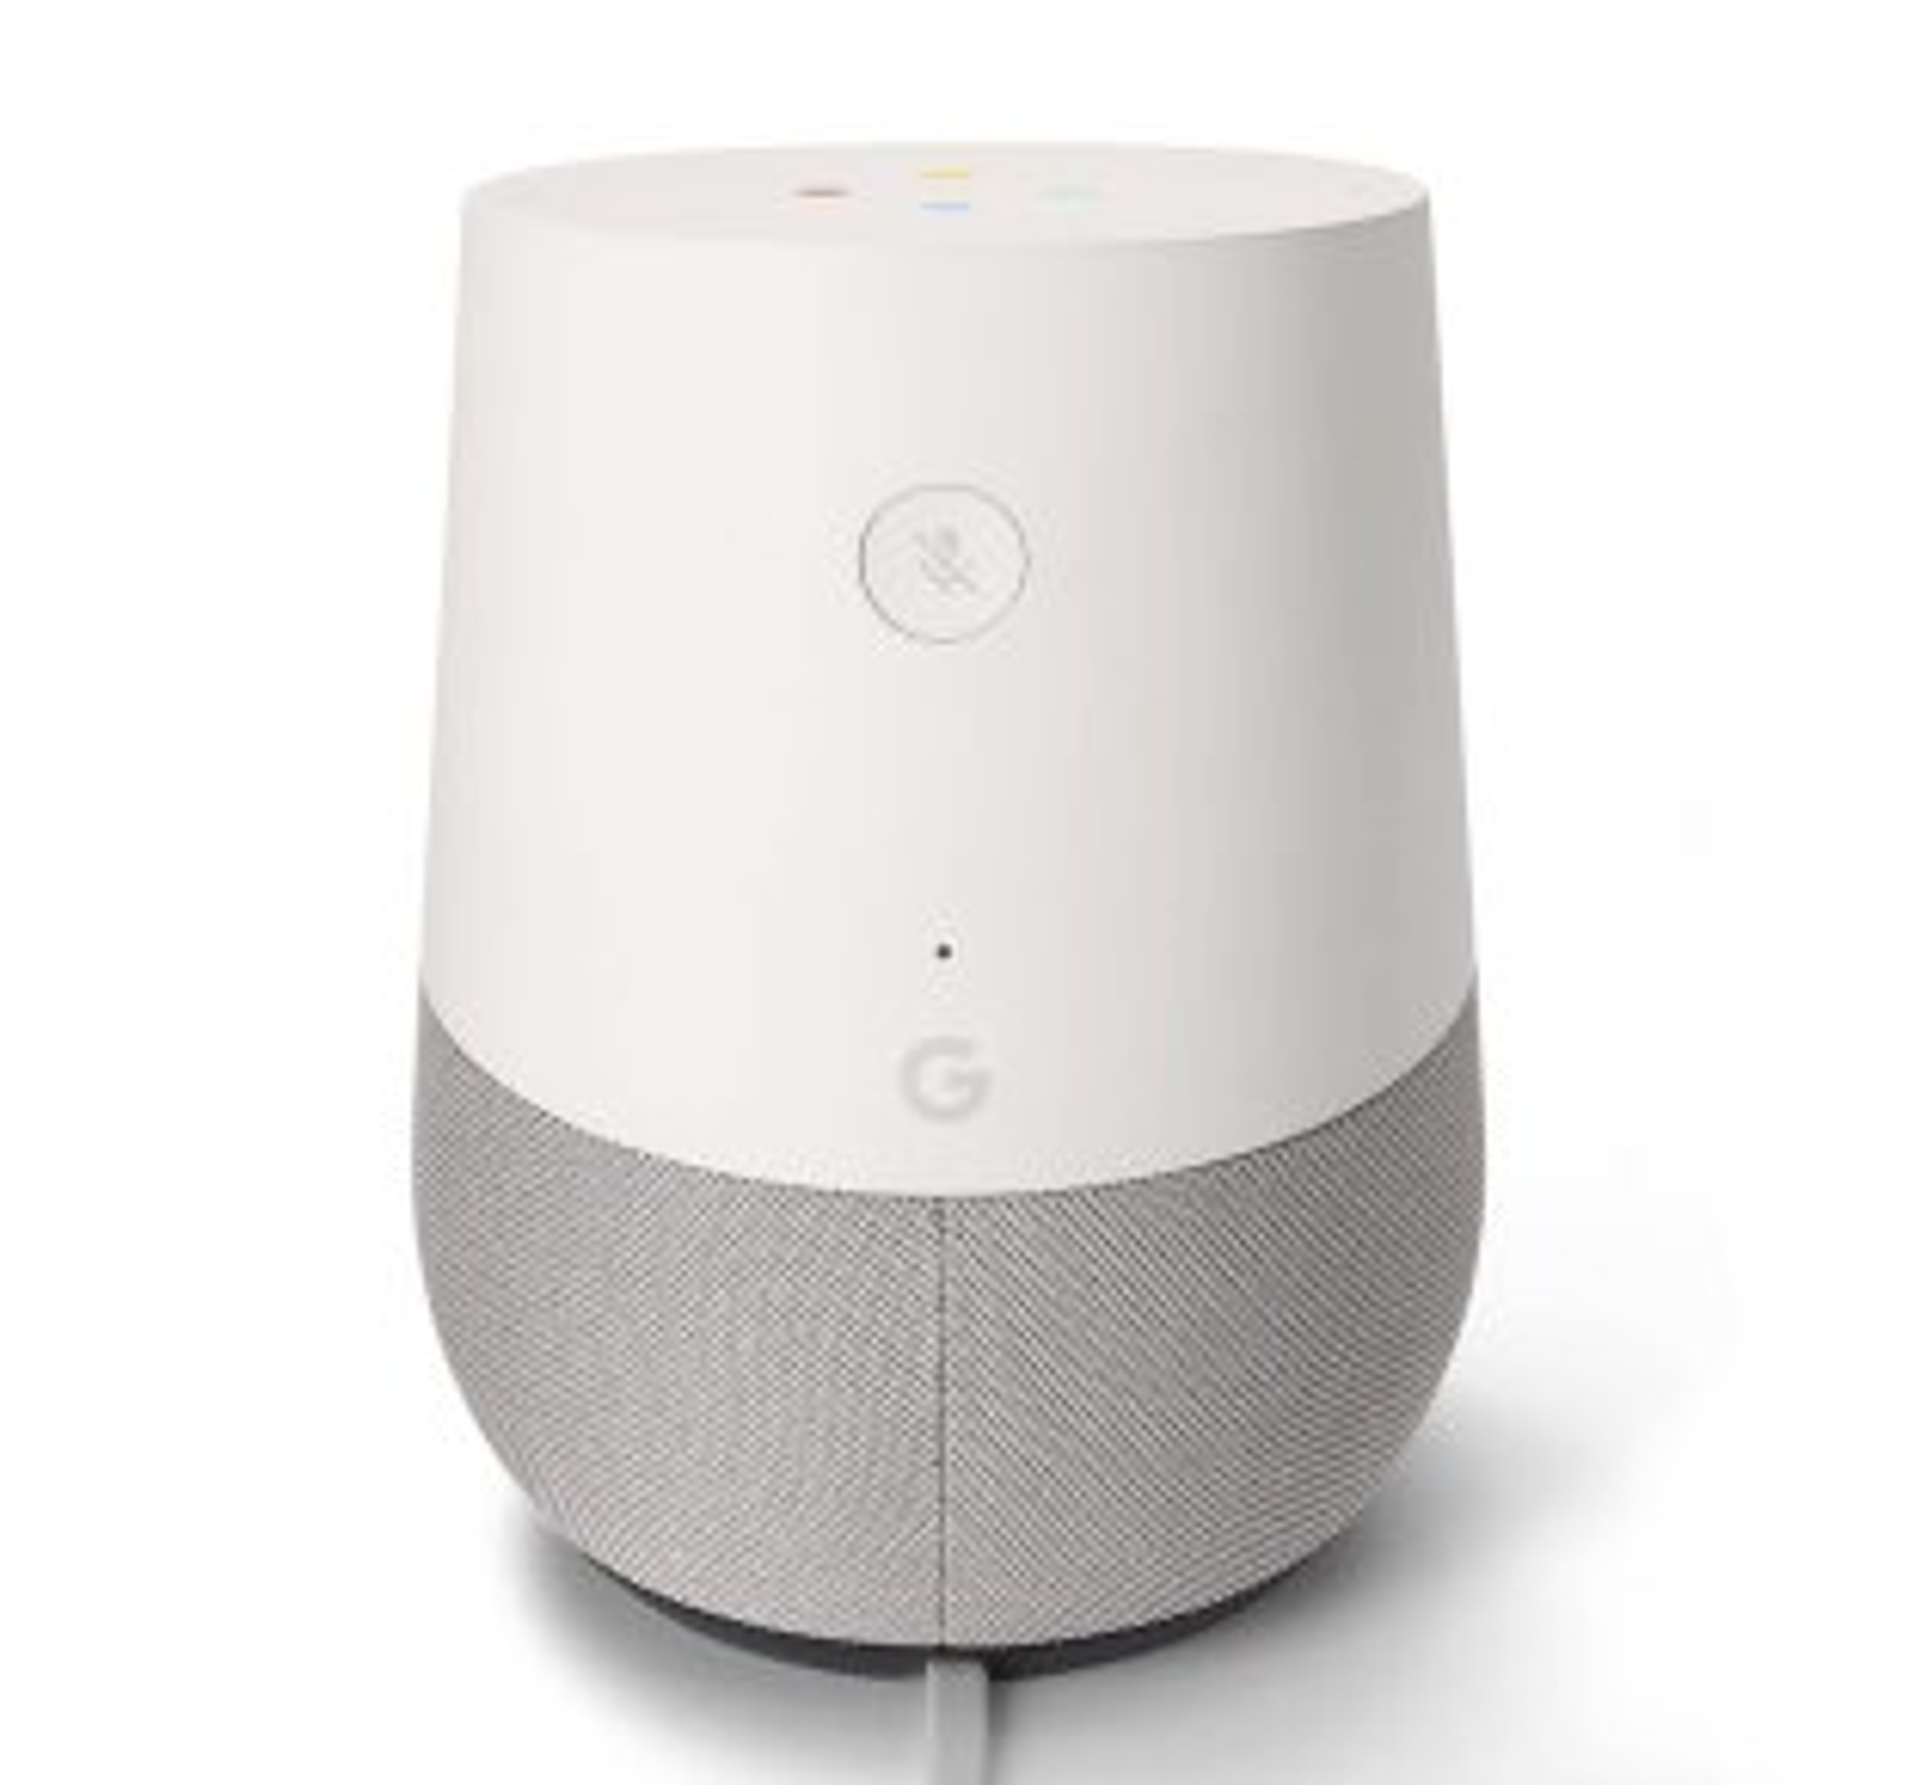 Google-home speaker